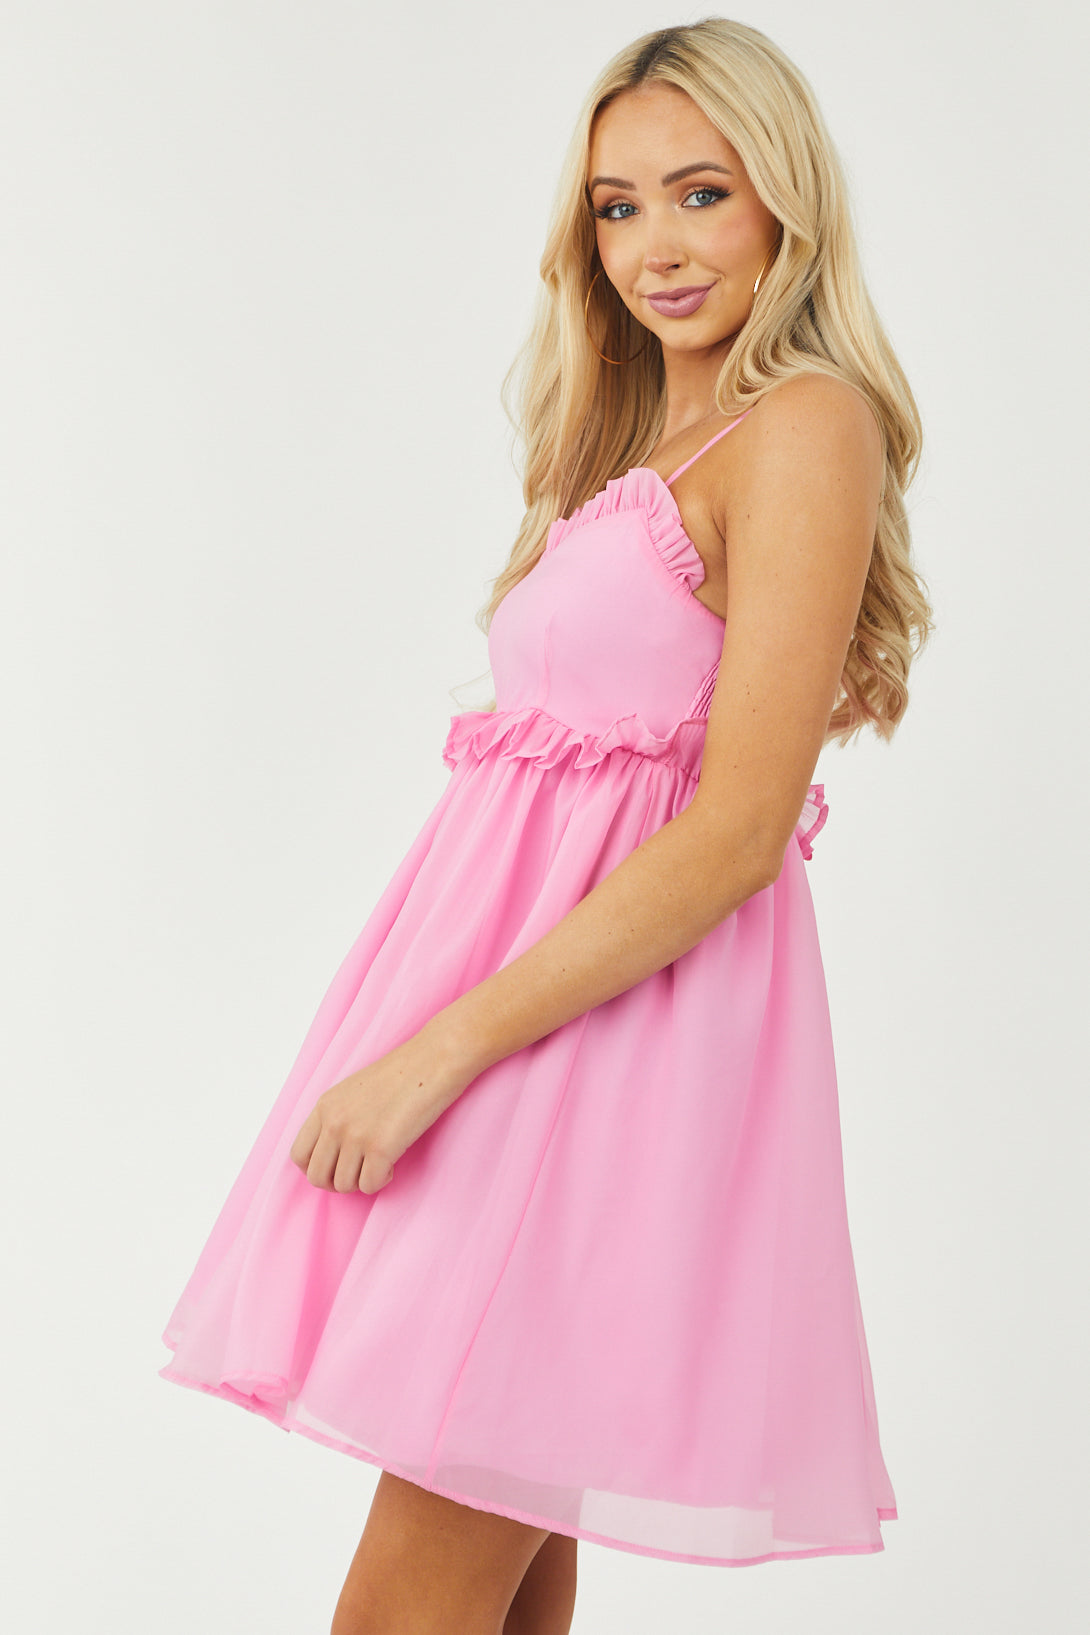 Bubblegum Pink Ruffle Sleeveless Short Dress